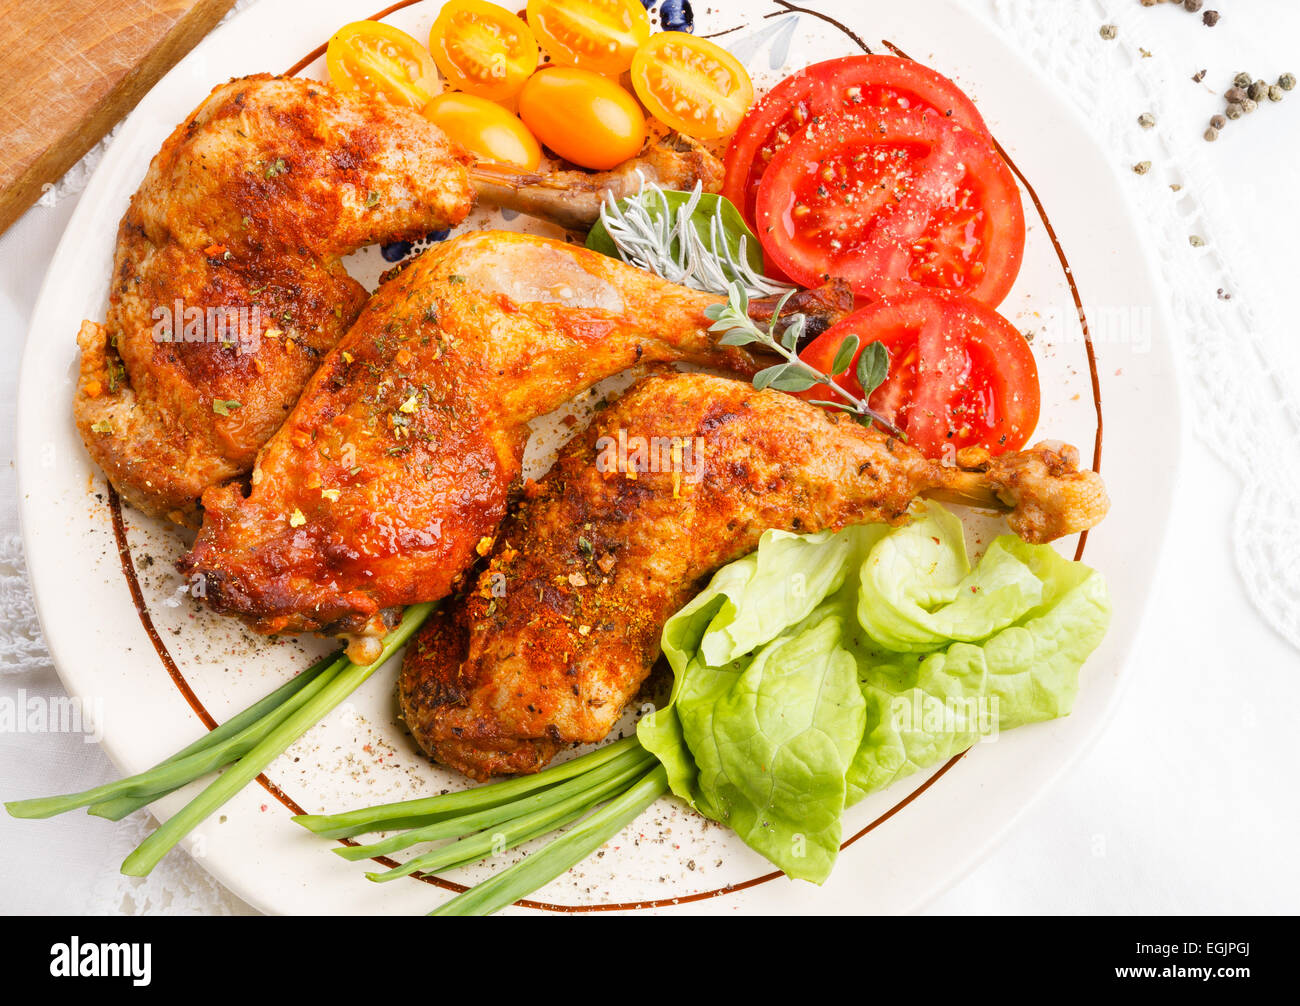 Nahaufnahme von Braten Türkei Beine Wit Tomaten Salat Kräuter auf weißes Tischtuch, Ansicht von oben Stockfoto